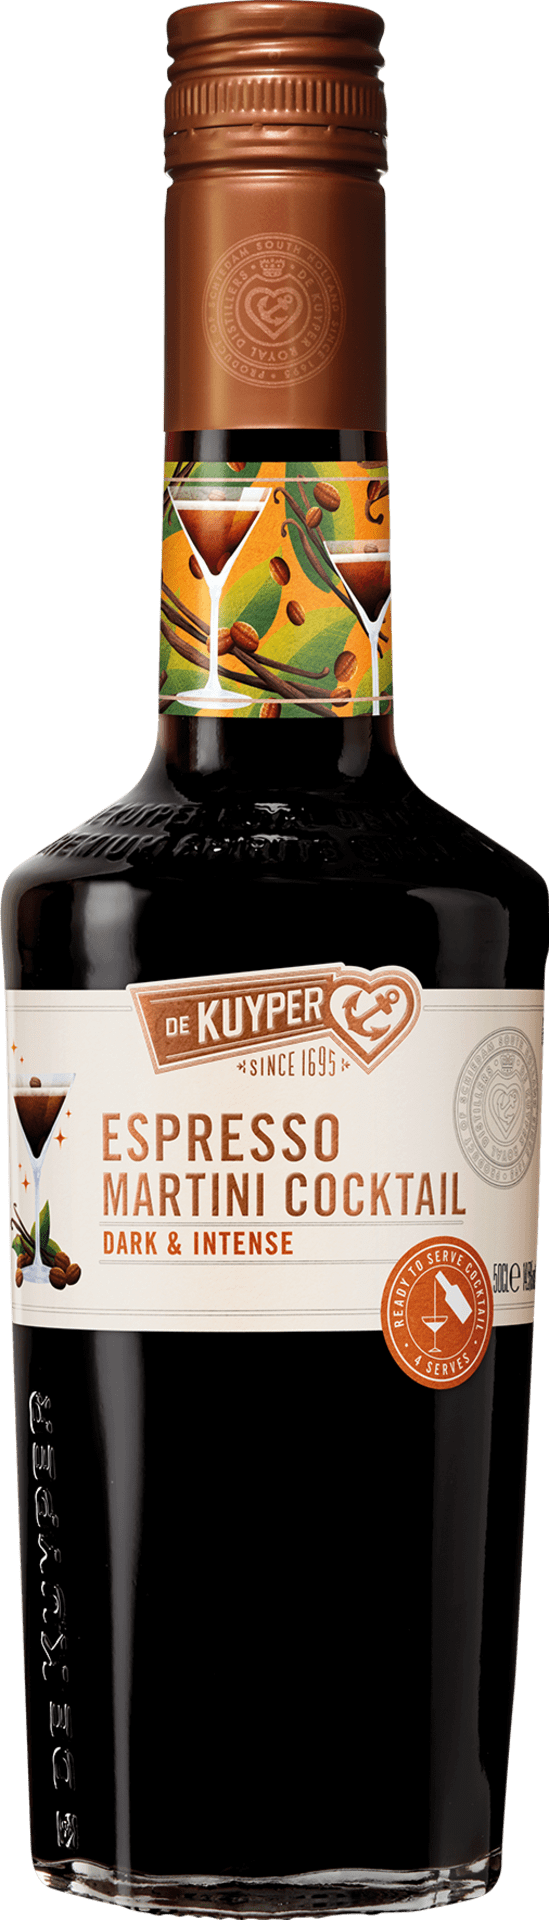 Espresso Martini Cocktail - Ready to Serve